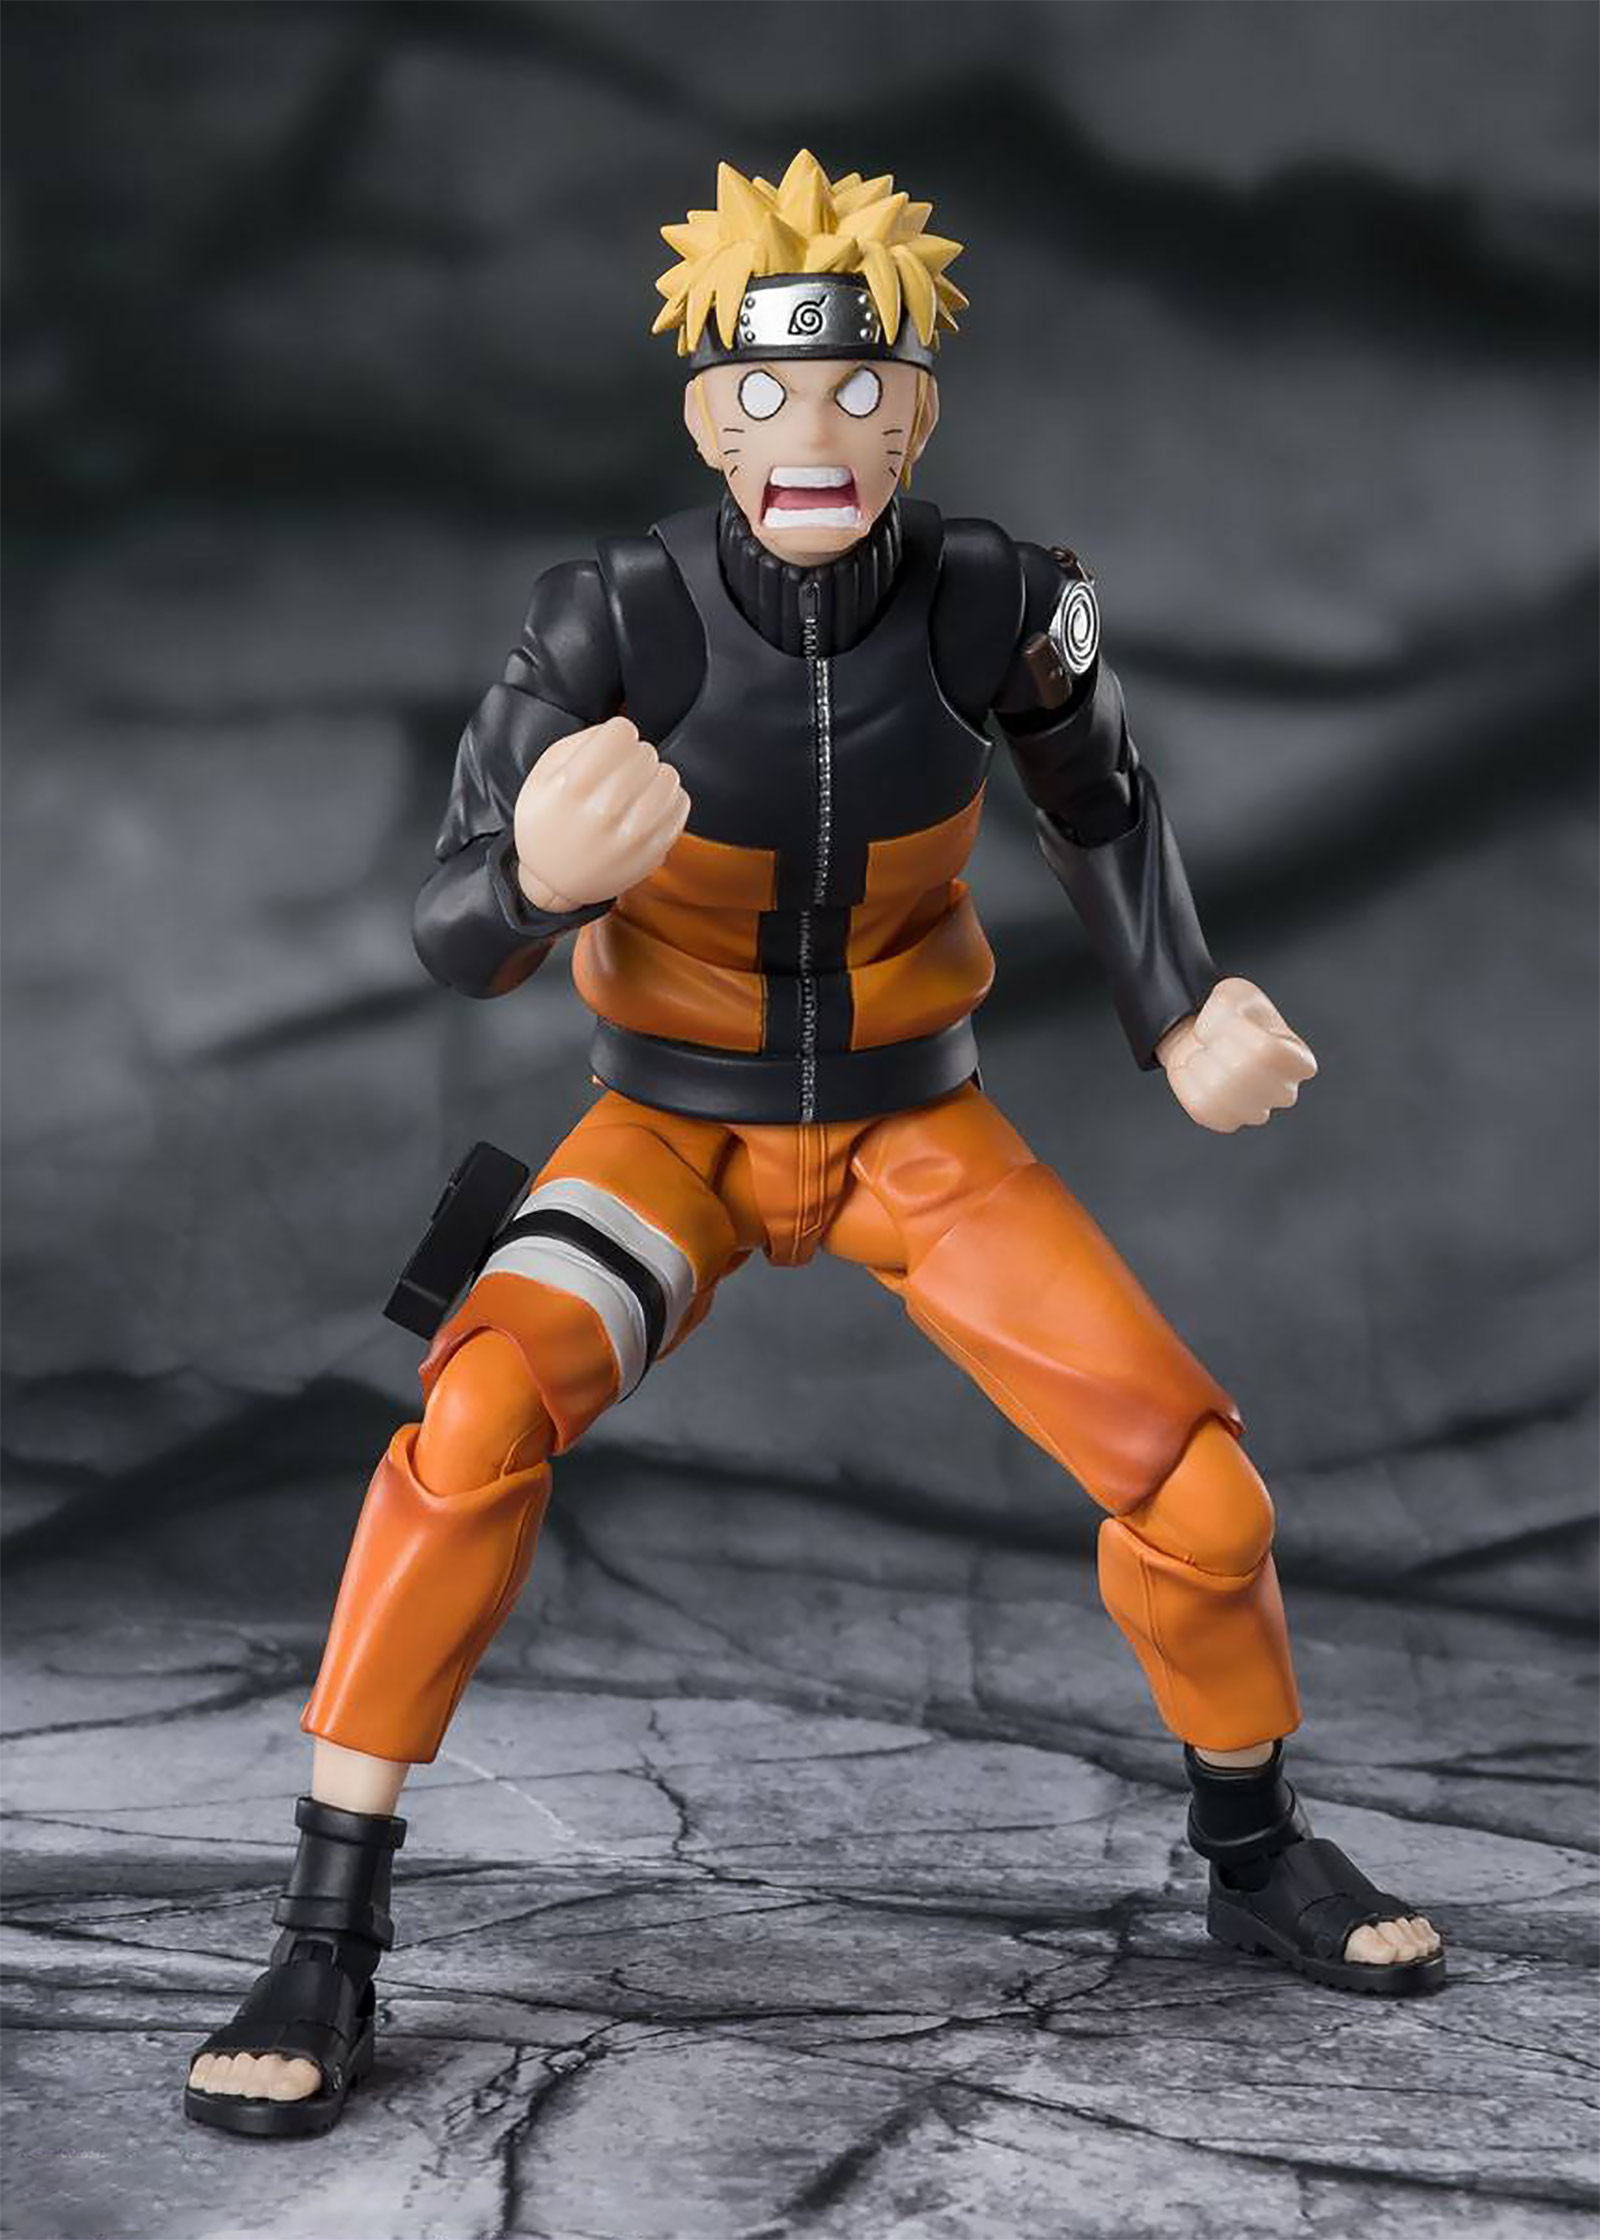 Naruto Shippuden - Naruto Uzumaki The Jinchuuriki Action Figure